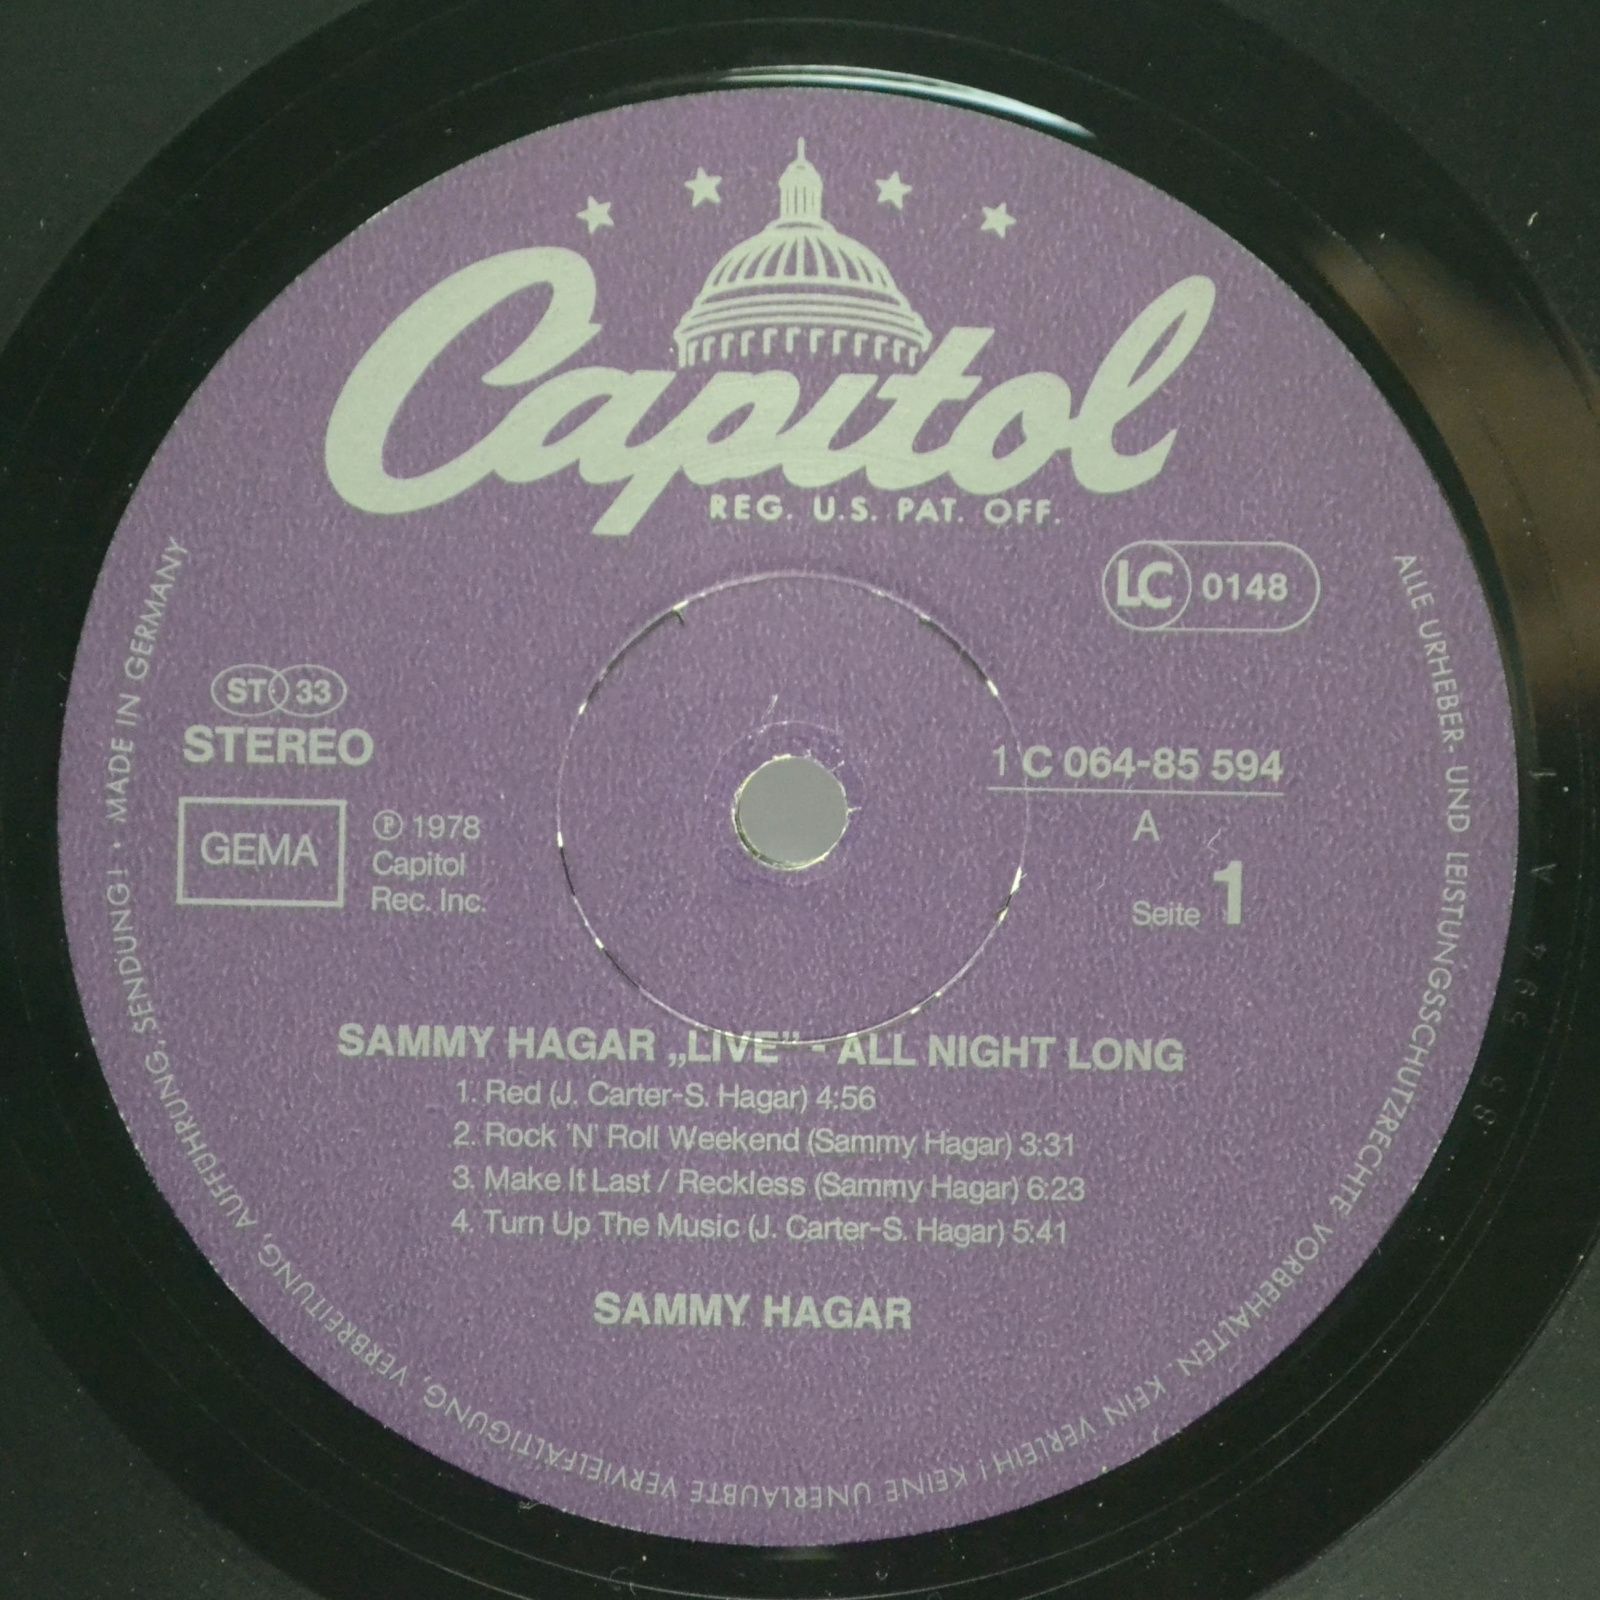 Sammy Hagar — All Night Long, 1978